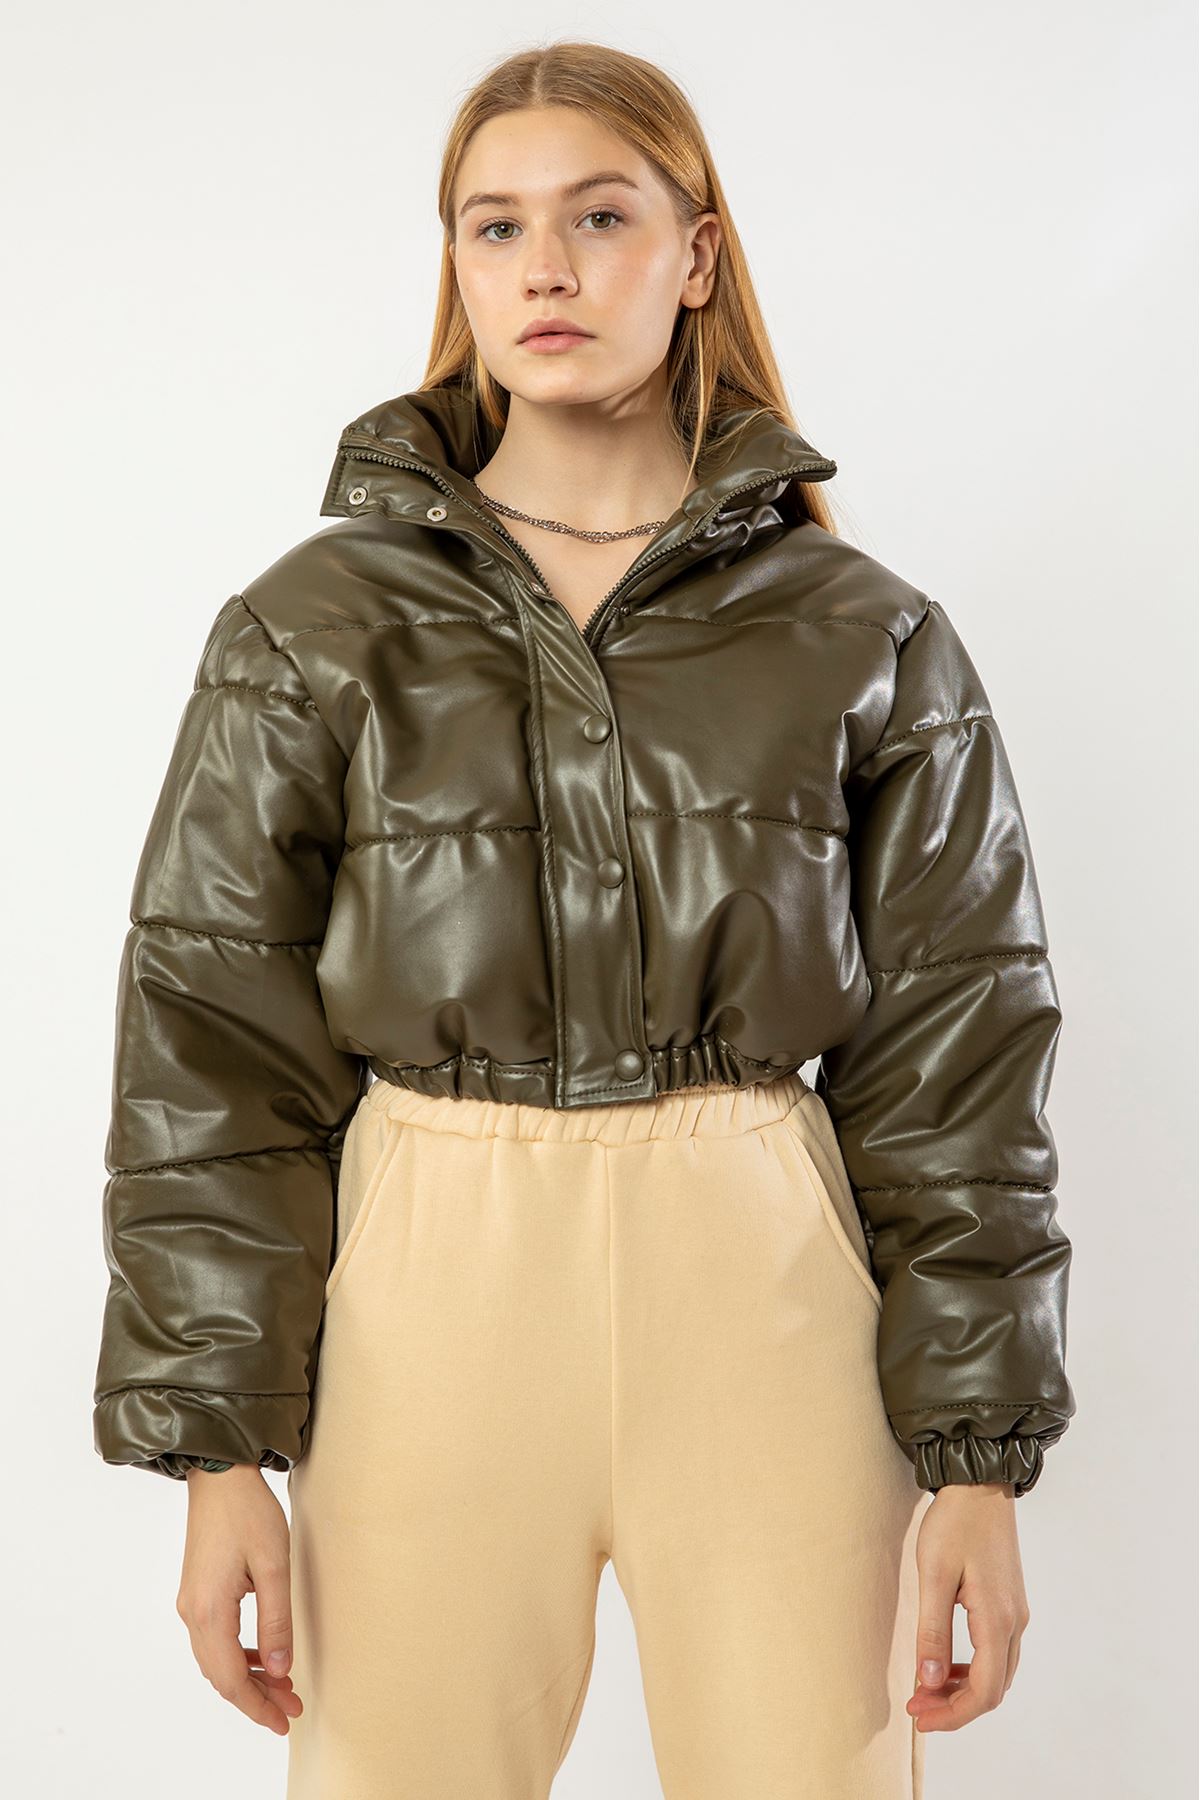 Leather Fabric Long Sleeve Zip Neck Short Oversize Women Coat - Khaki 